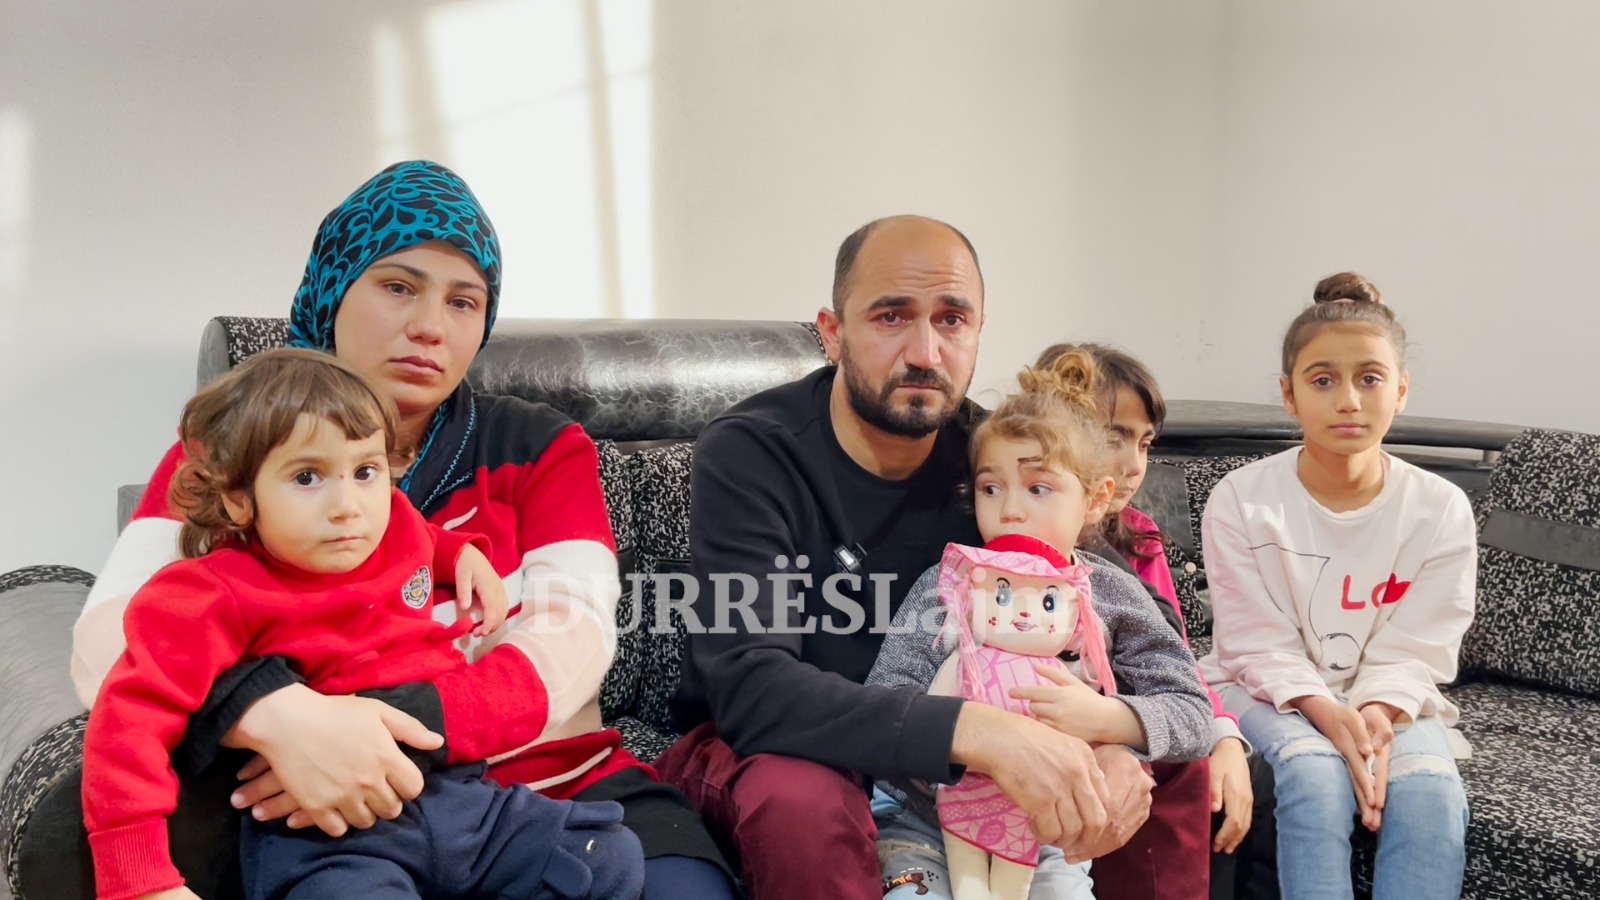 I shpëtuan tërmetit dhe po strehohen në Durrës, familja turke apelon për ndihmë (VIDEO)